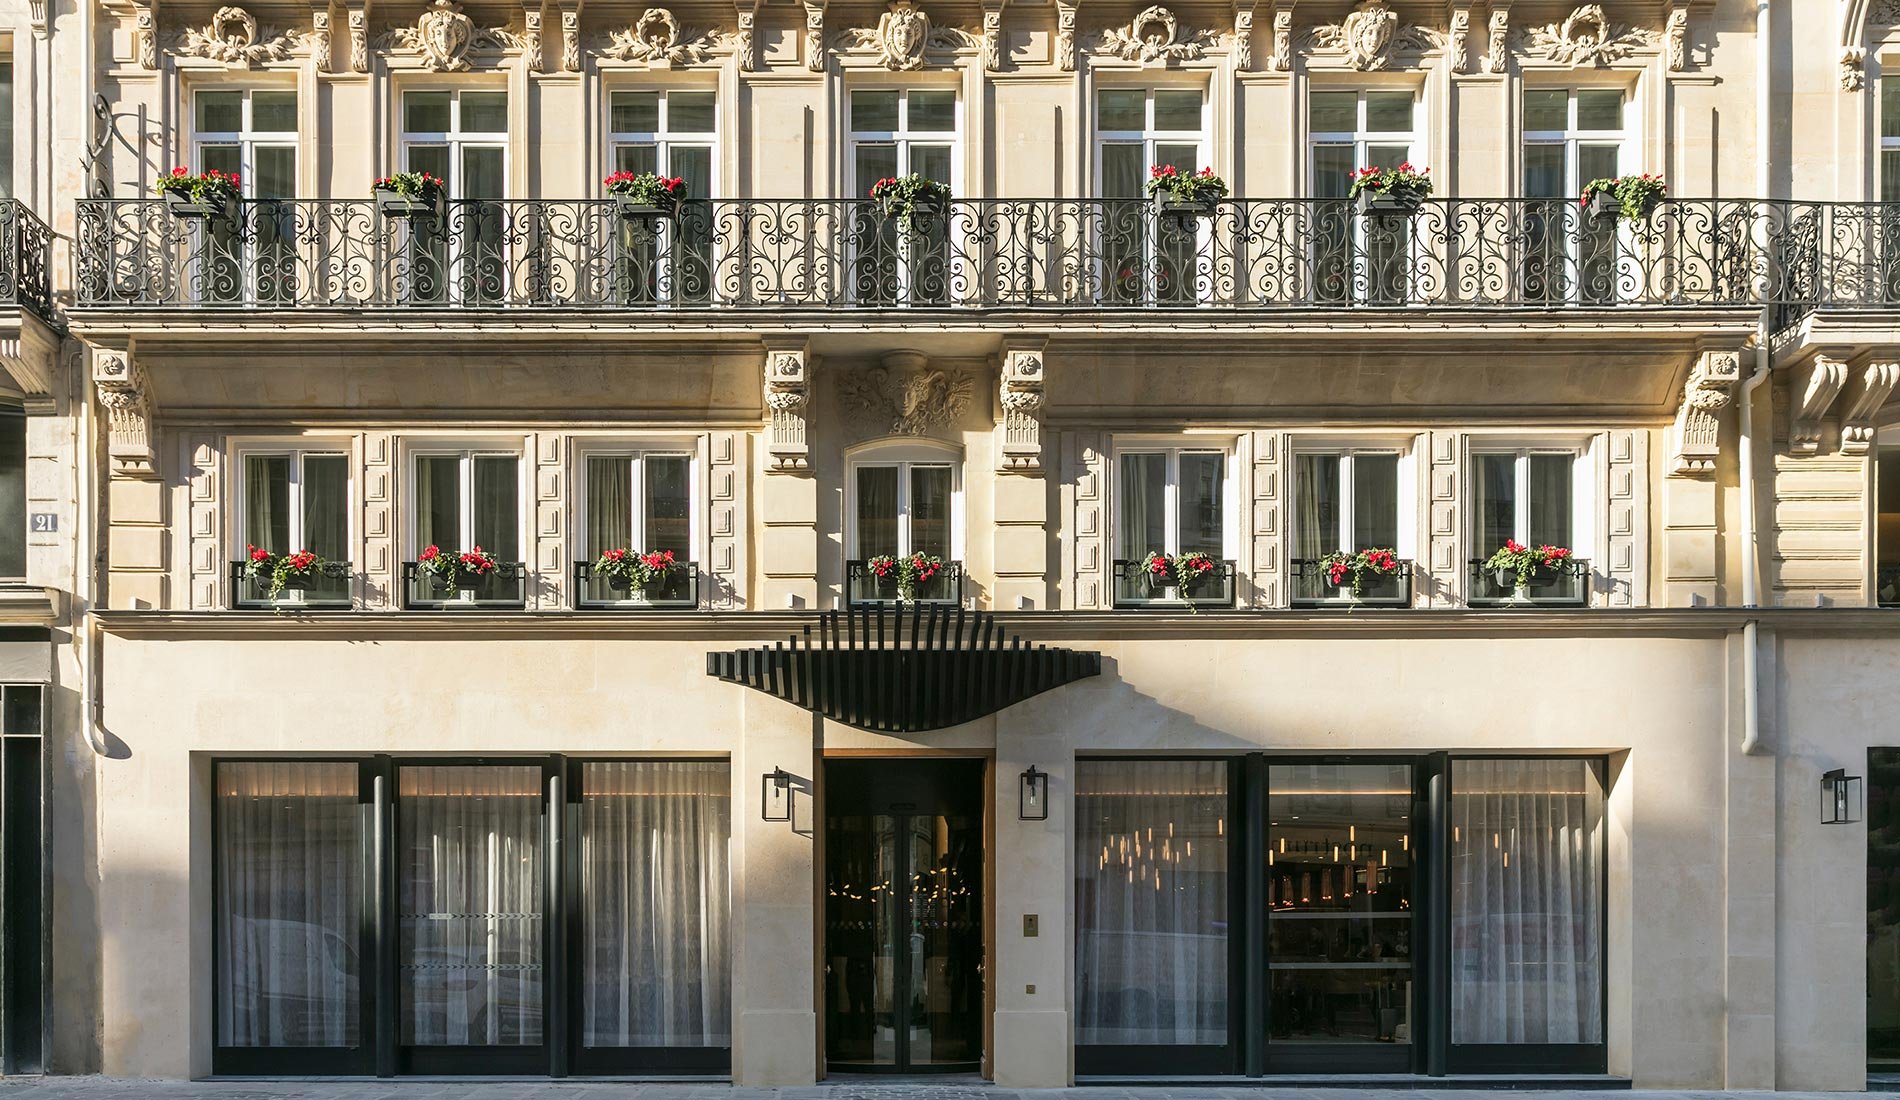 Luxury hotel - Maison Albar Hotels Le Pont-Neuf - 5-star - front